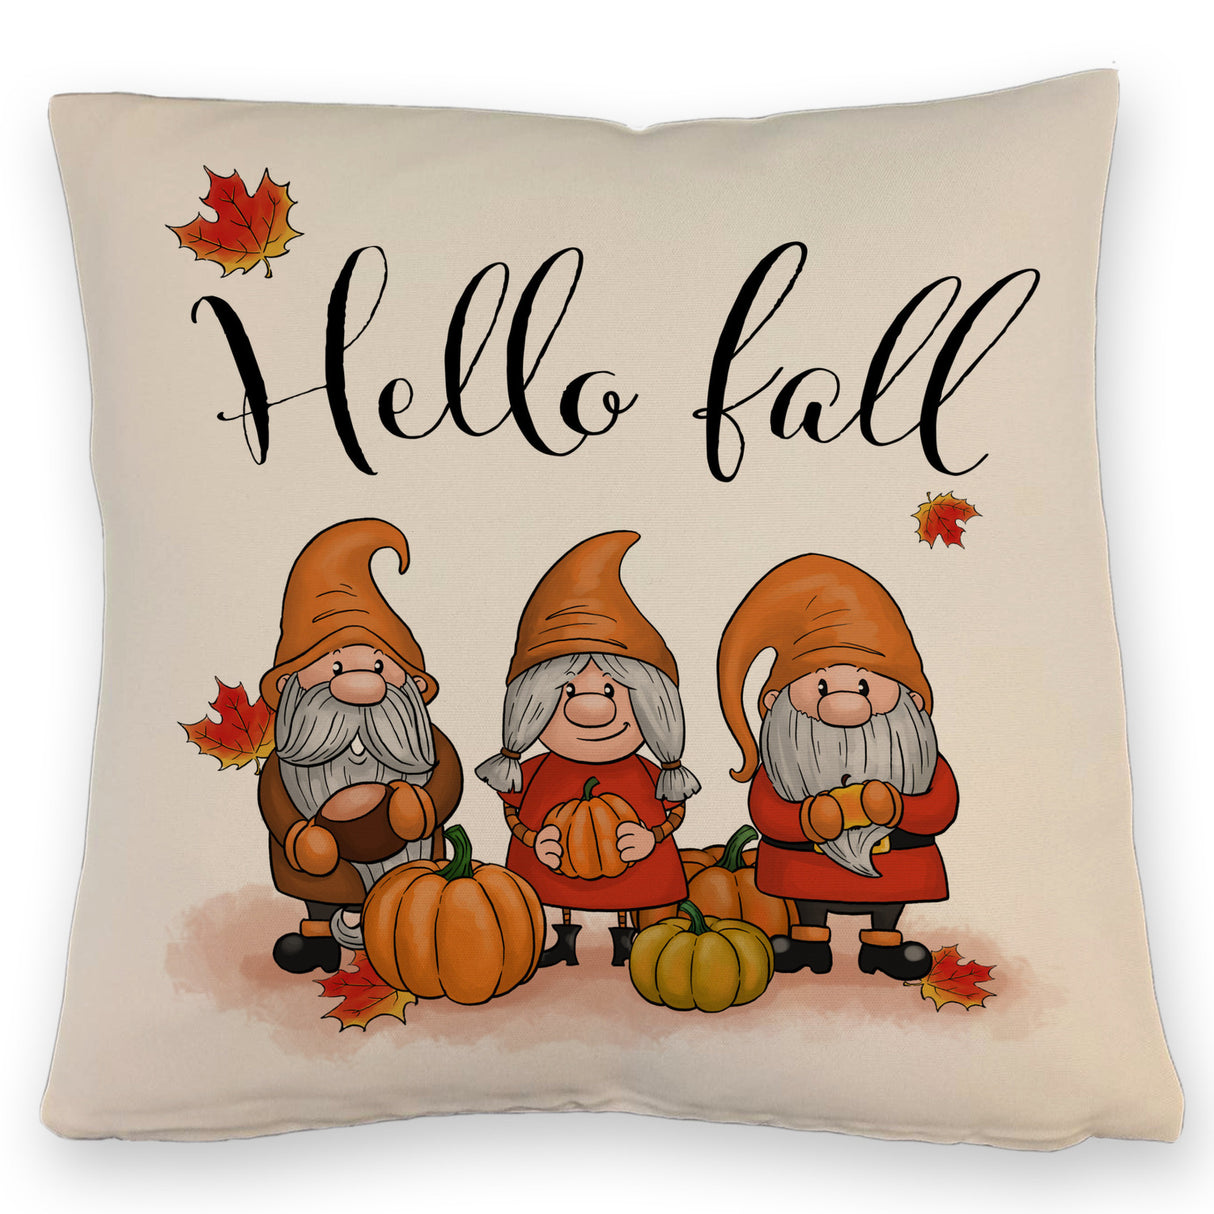 Herbst Kissen - Hello fall mit niedlichen Gnomen